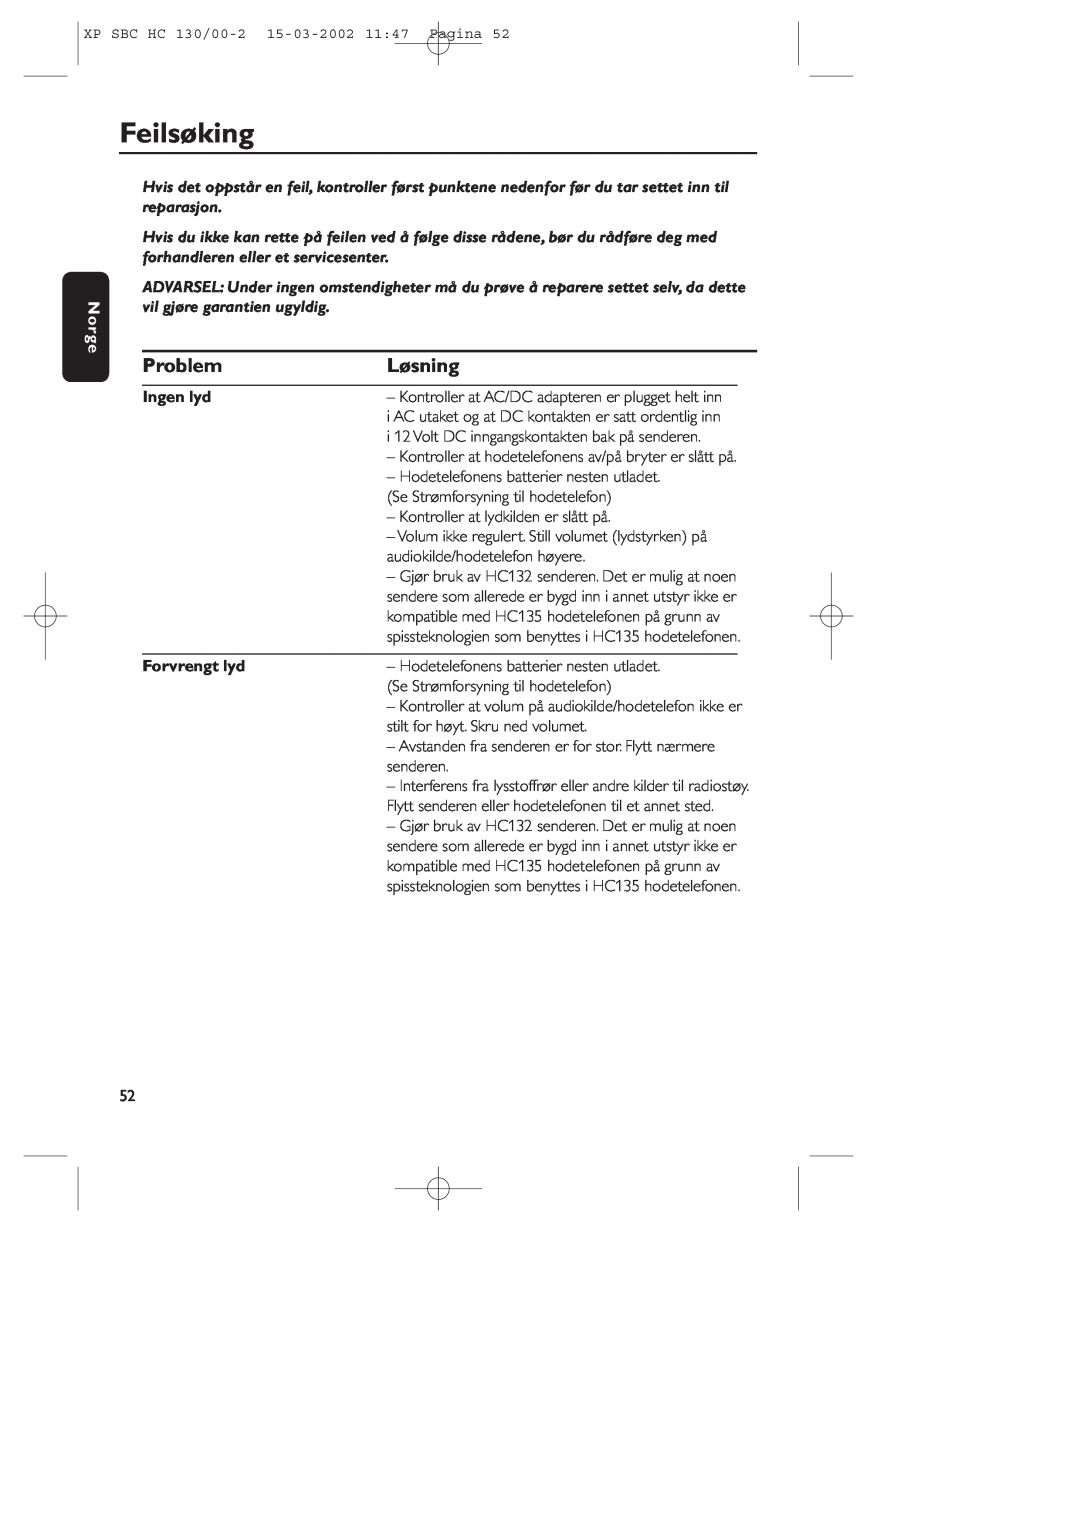 Philips SBC HC130 manual Feilsøking, Problem, Løsning, Norge, Ingen lyd, Forvrengt lyd 